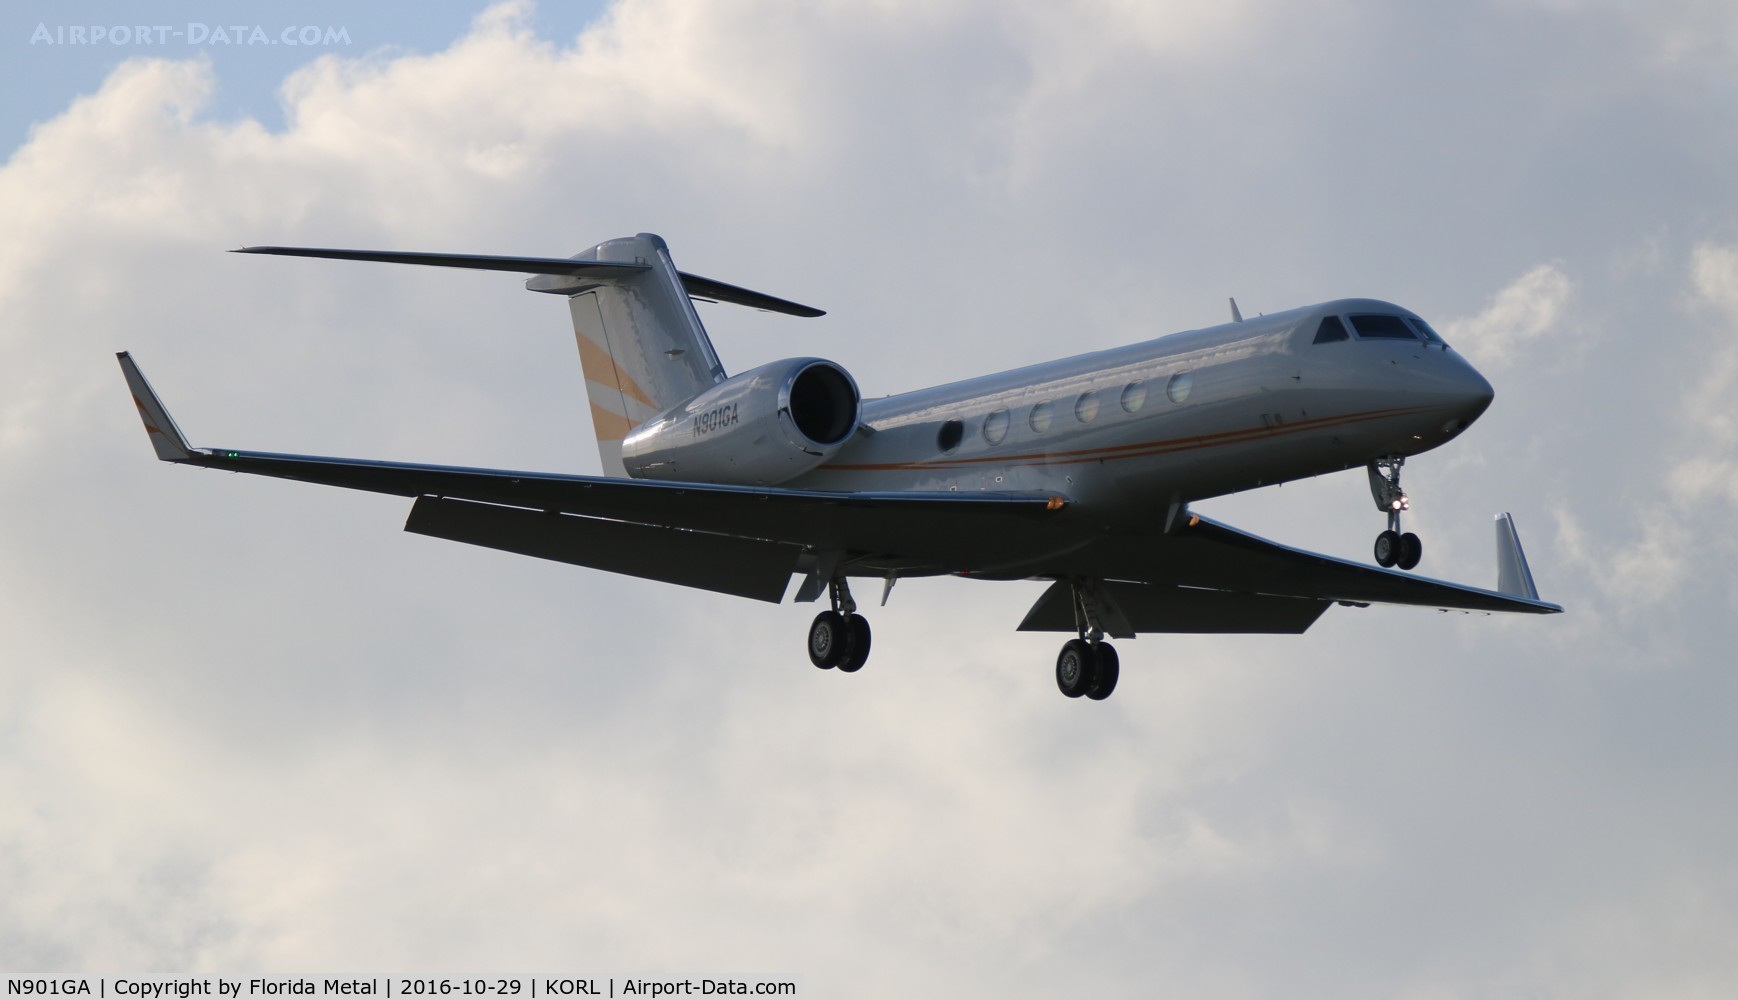 N901GA, 2013 Gulfstream Aerospace GIV-X (G450) C/N 4301, NBAA 2016